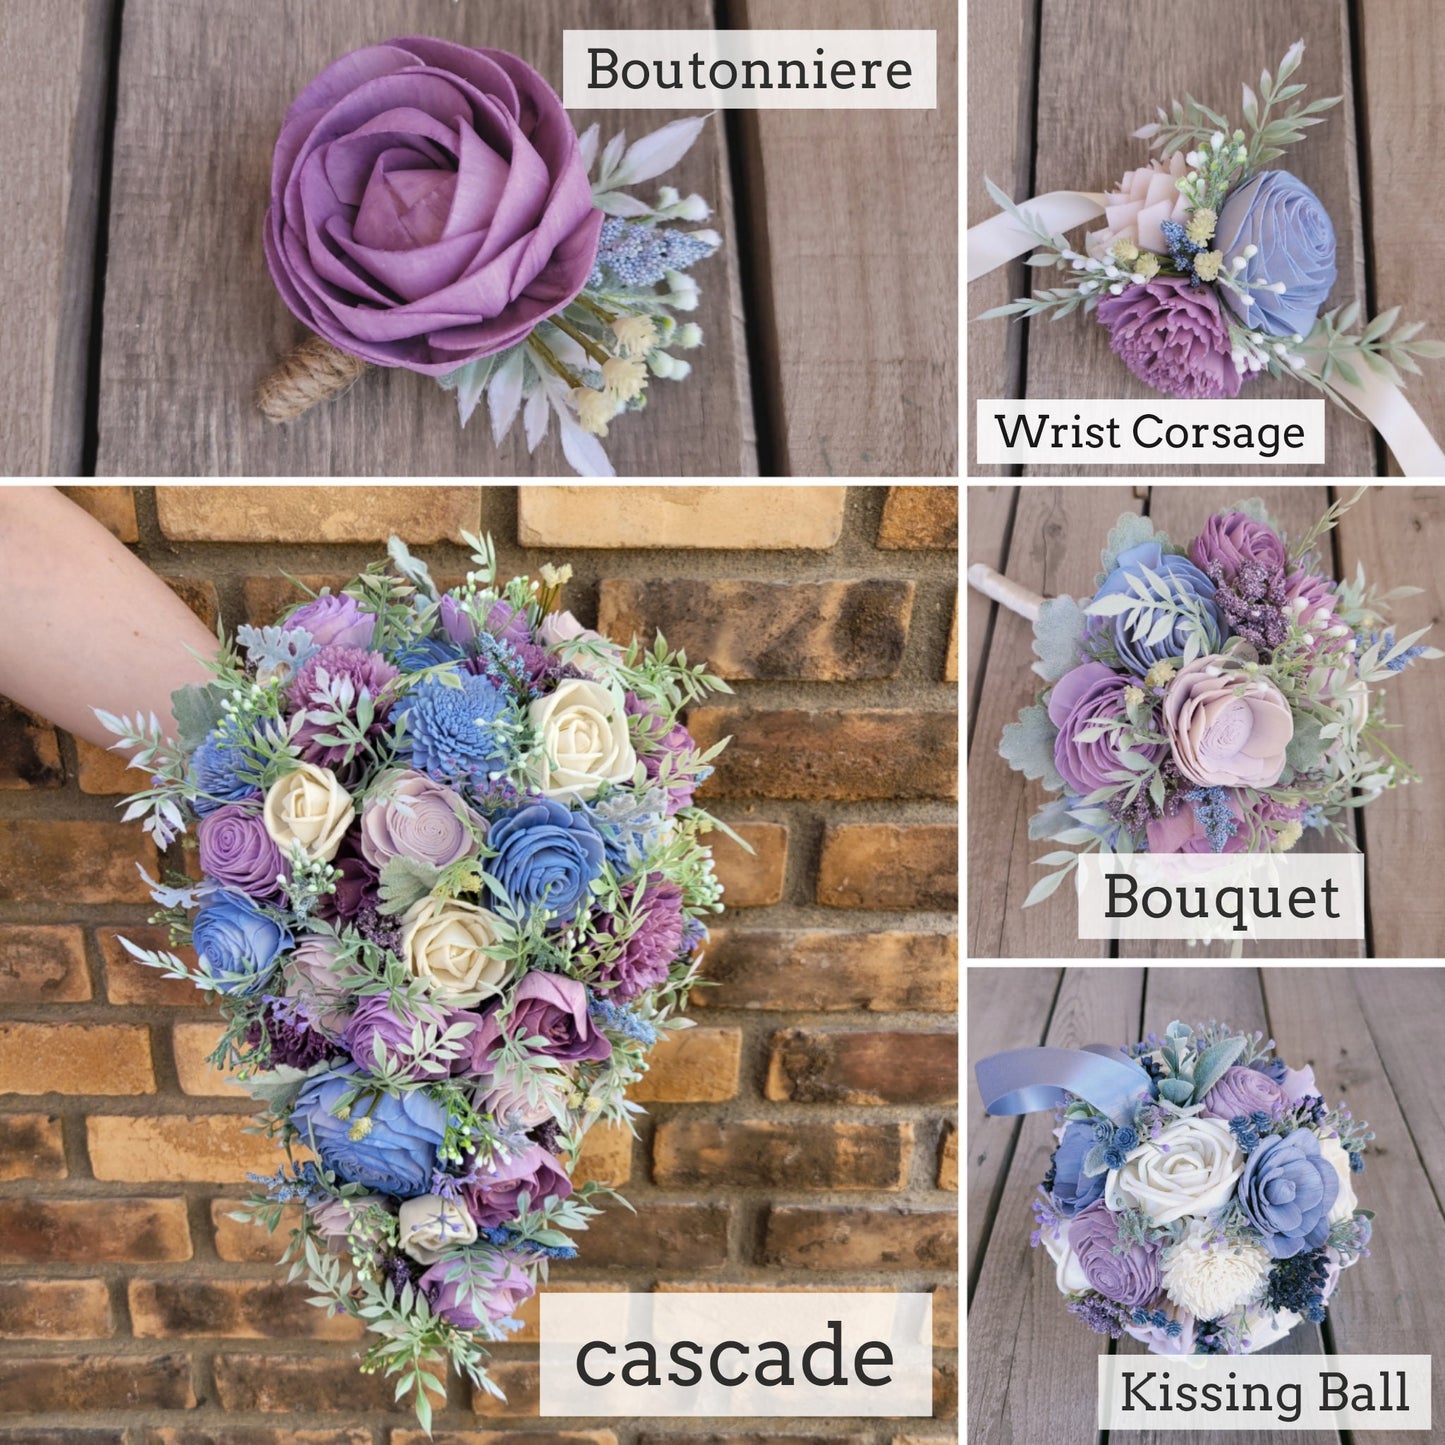 Sola Wood Flower Bouquet, Navy Bridal Bouquet, Blush Wedding Bouquet, Artificial Bridal Bouquet